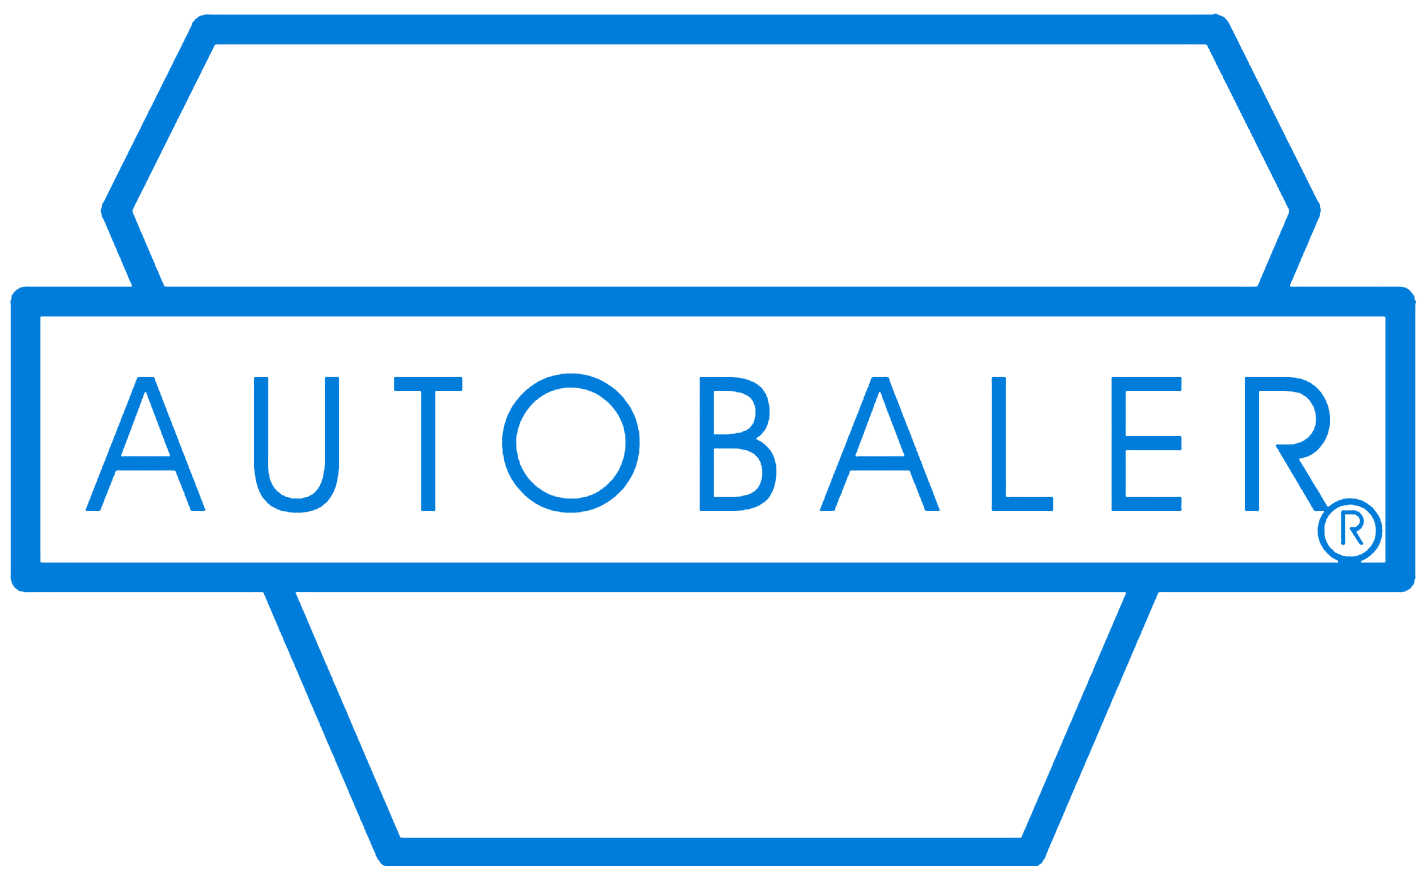 Autoblaer Logo - Blue & White